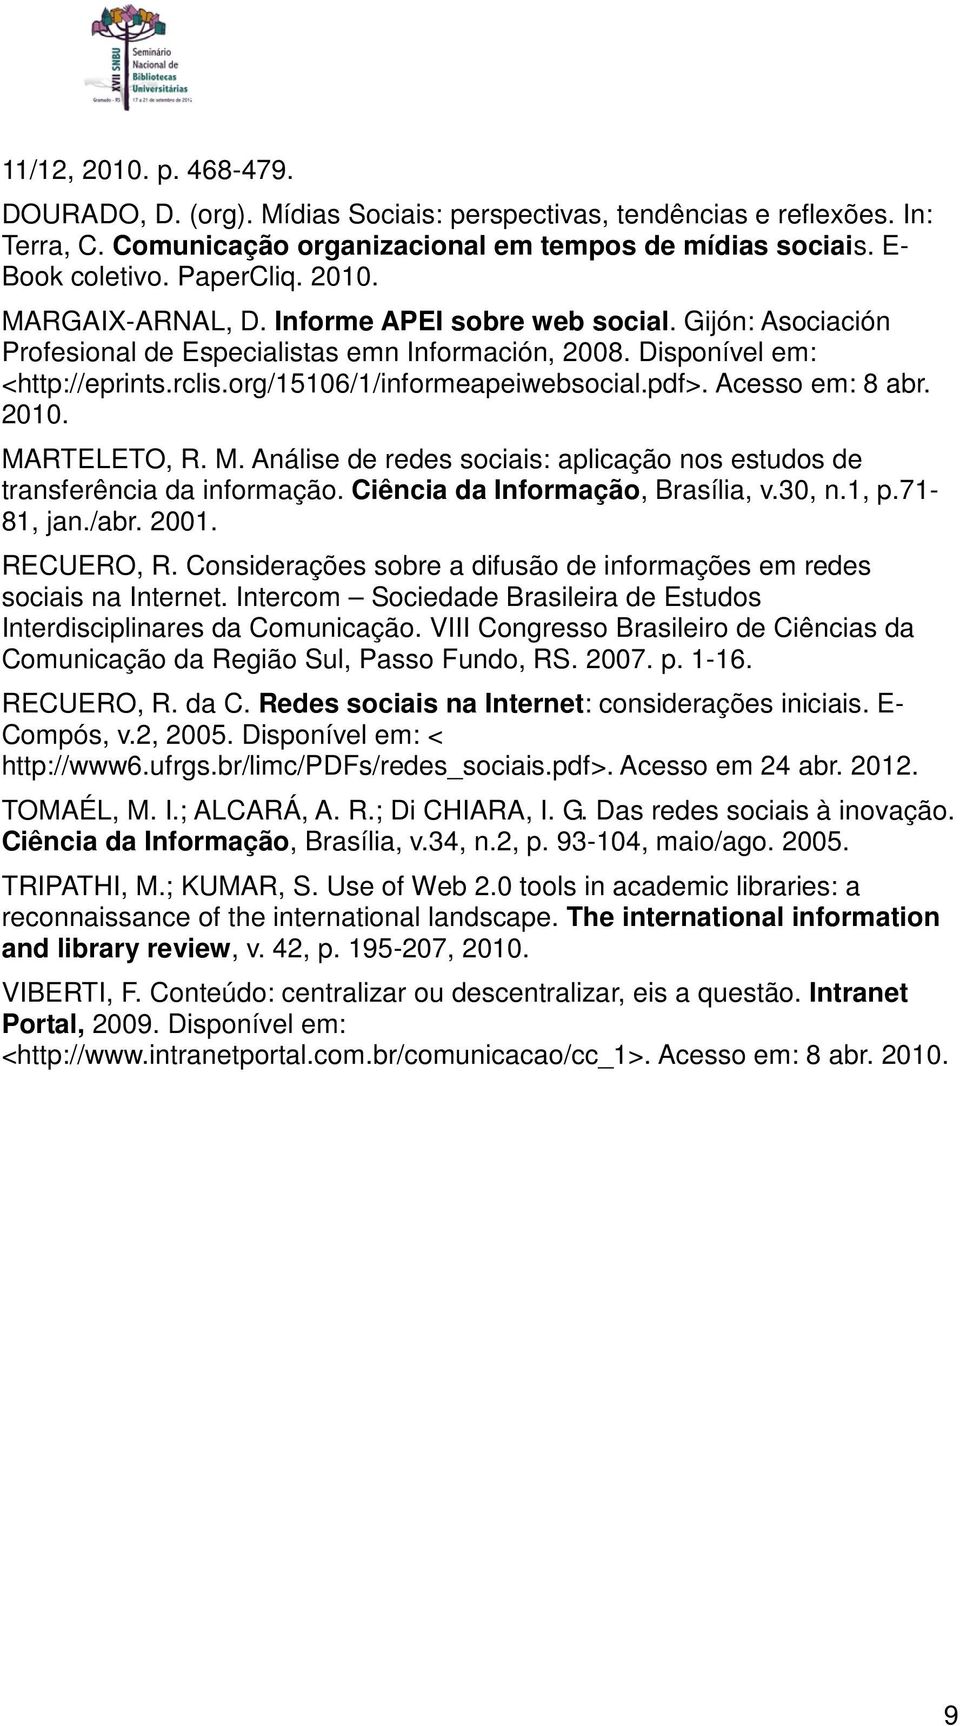 Acesso em: 8 abr. 2010. MARTELETO, R. M. Análise de redes sociais: aplicação nos estudos de transferência da informação. Ciência da Informação, Brasília, v.30, n.1, p.71-81, jan./abr. 2001.